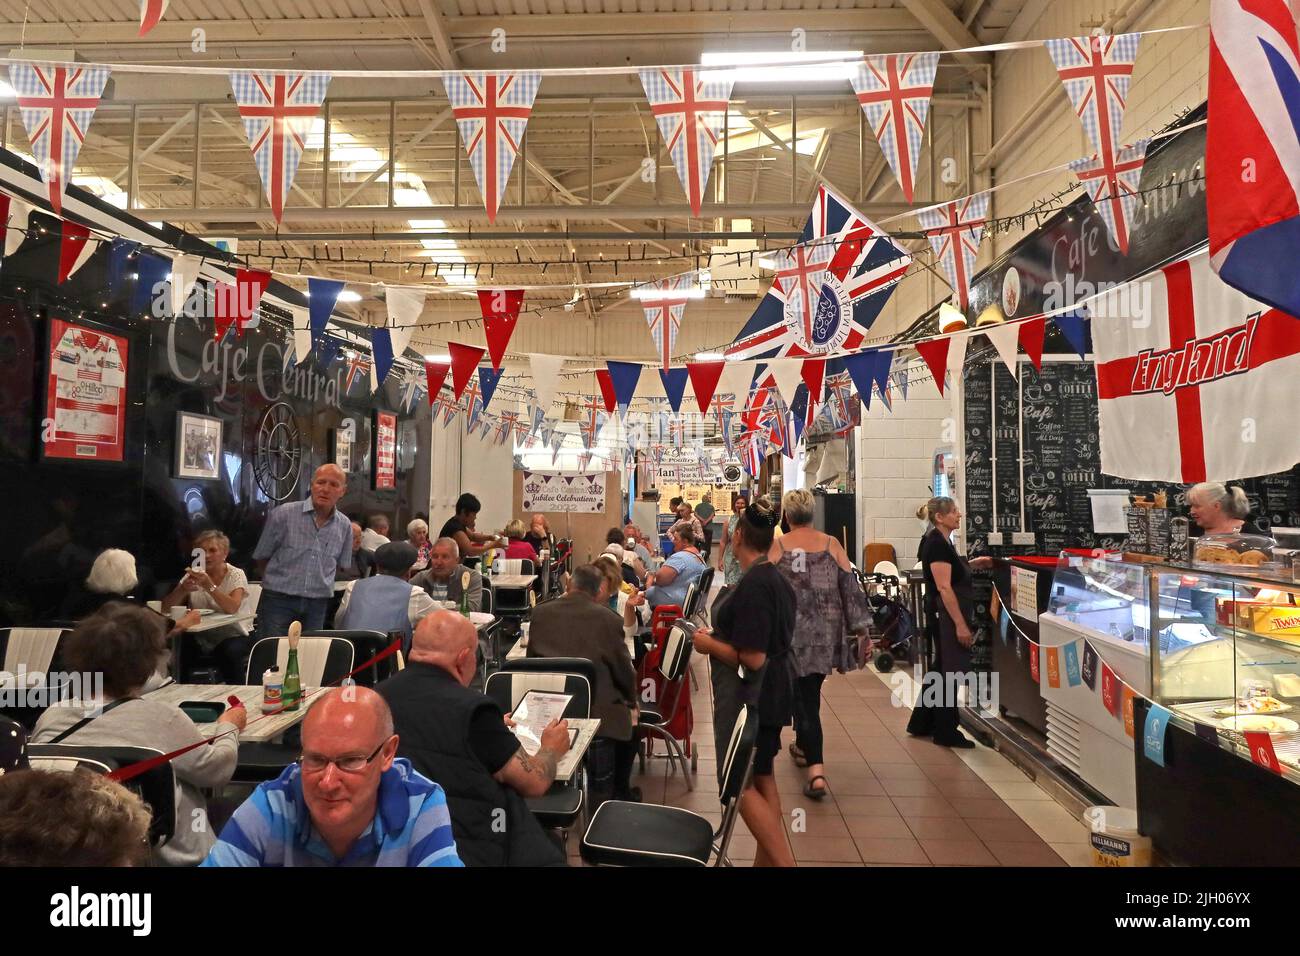 Cafe Central à Leigh marché intérieur couvert avec drapeaux / bunkting, Gas St, Leigh, Lancashire, Angleterre, ROYAUME-UNI, WN7 4PG Banque D'Images